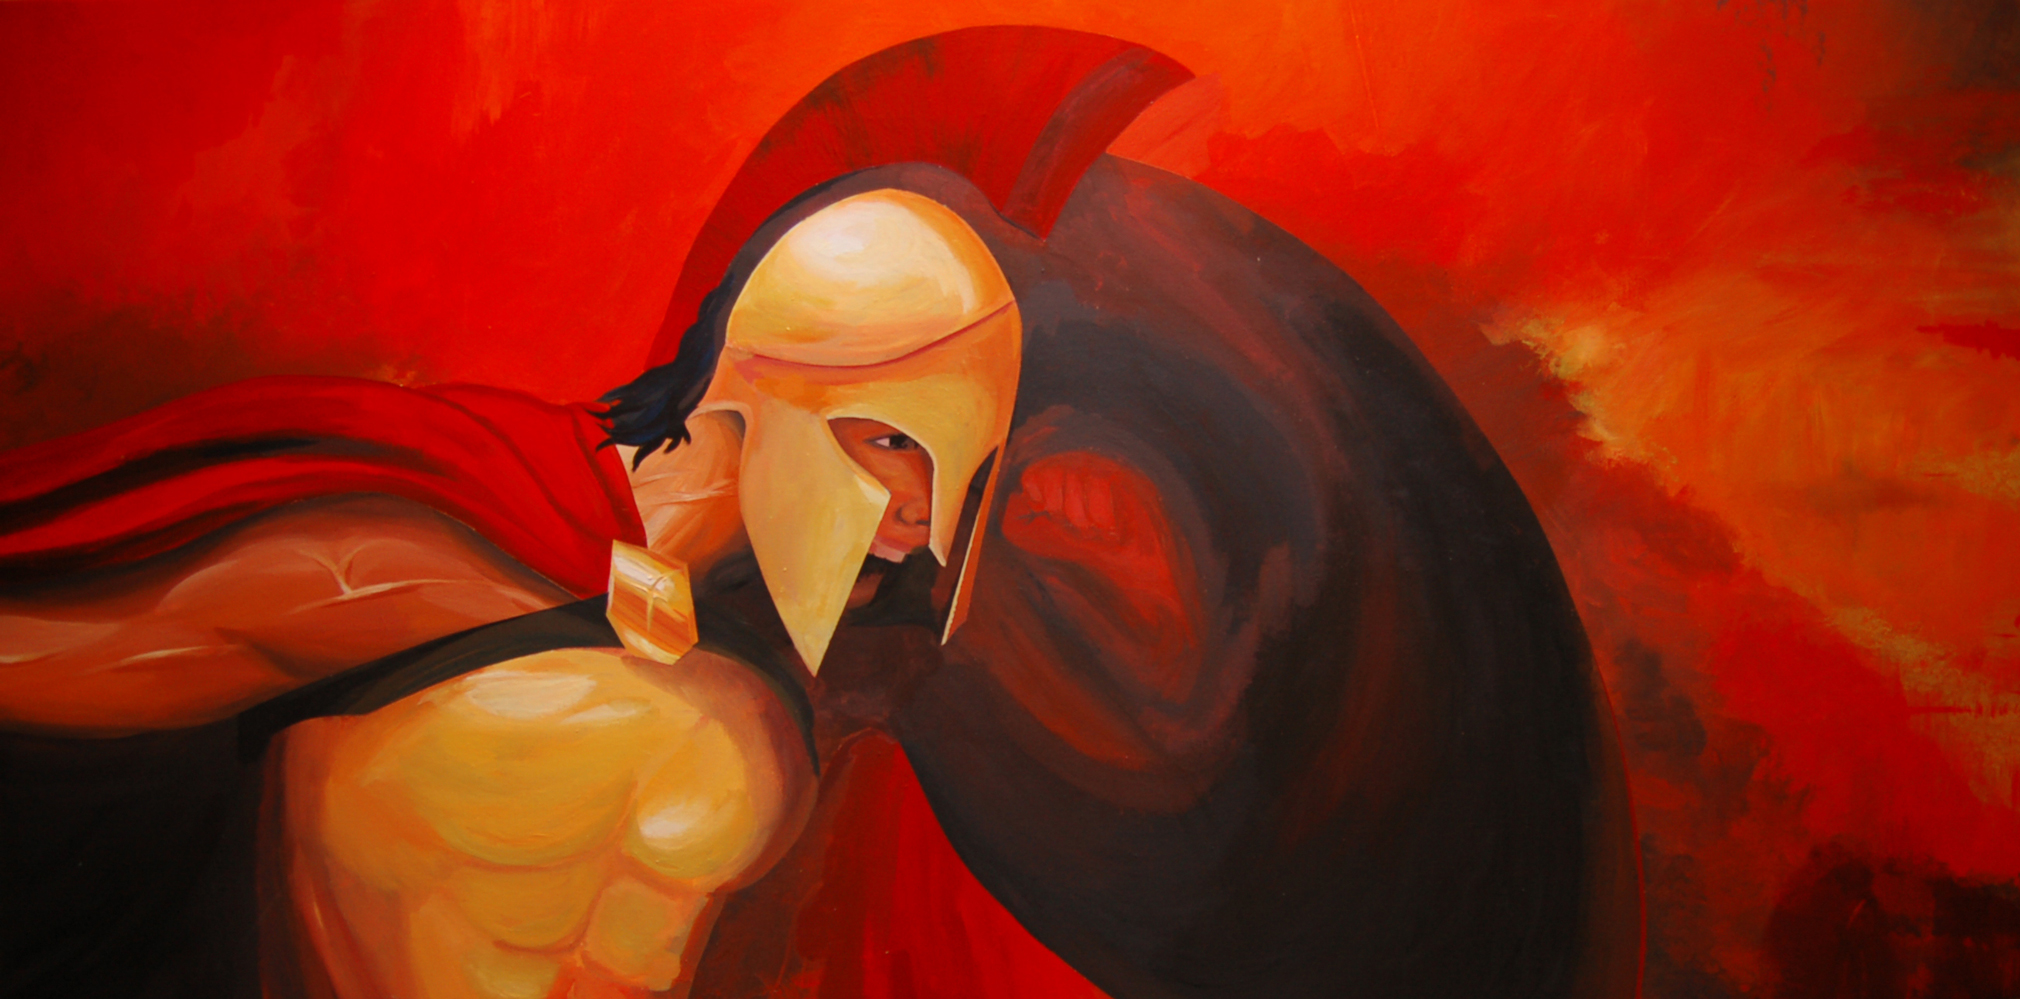 CEmmanuelle Spartan #1. Acrylic paint on canvas (120cm x 60cm)